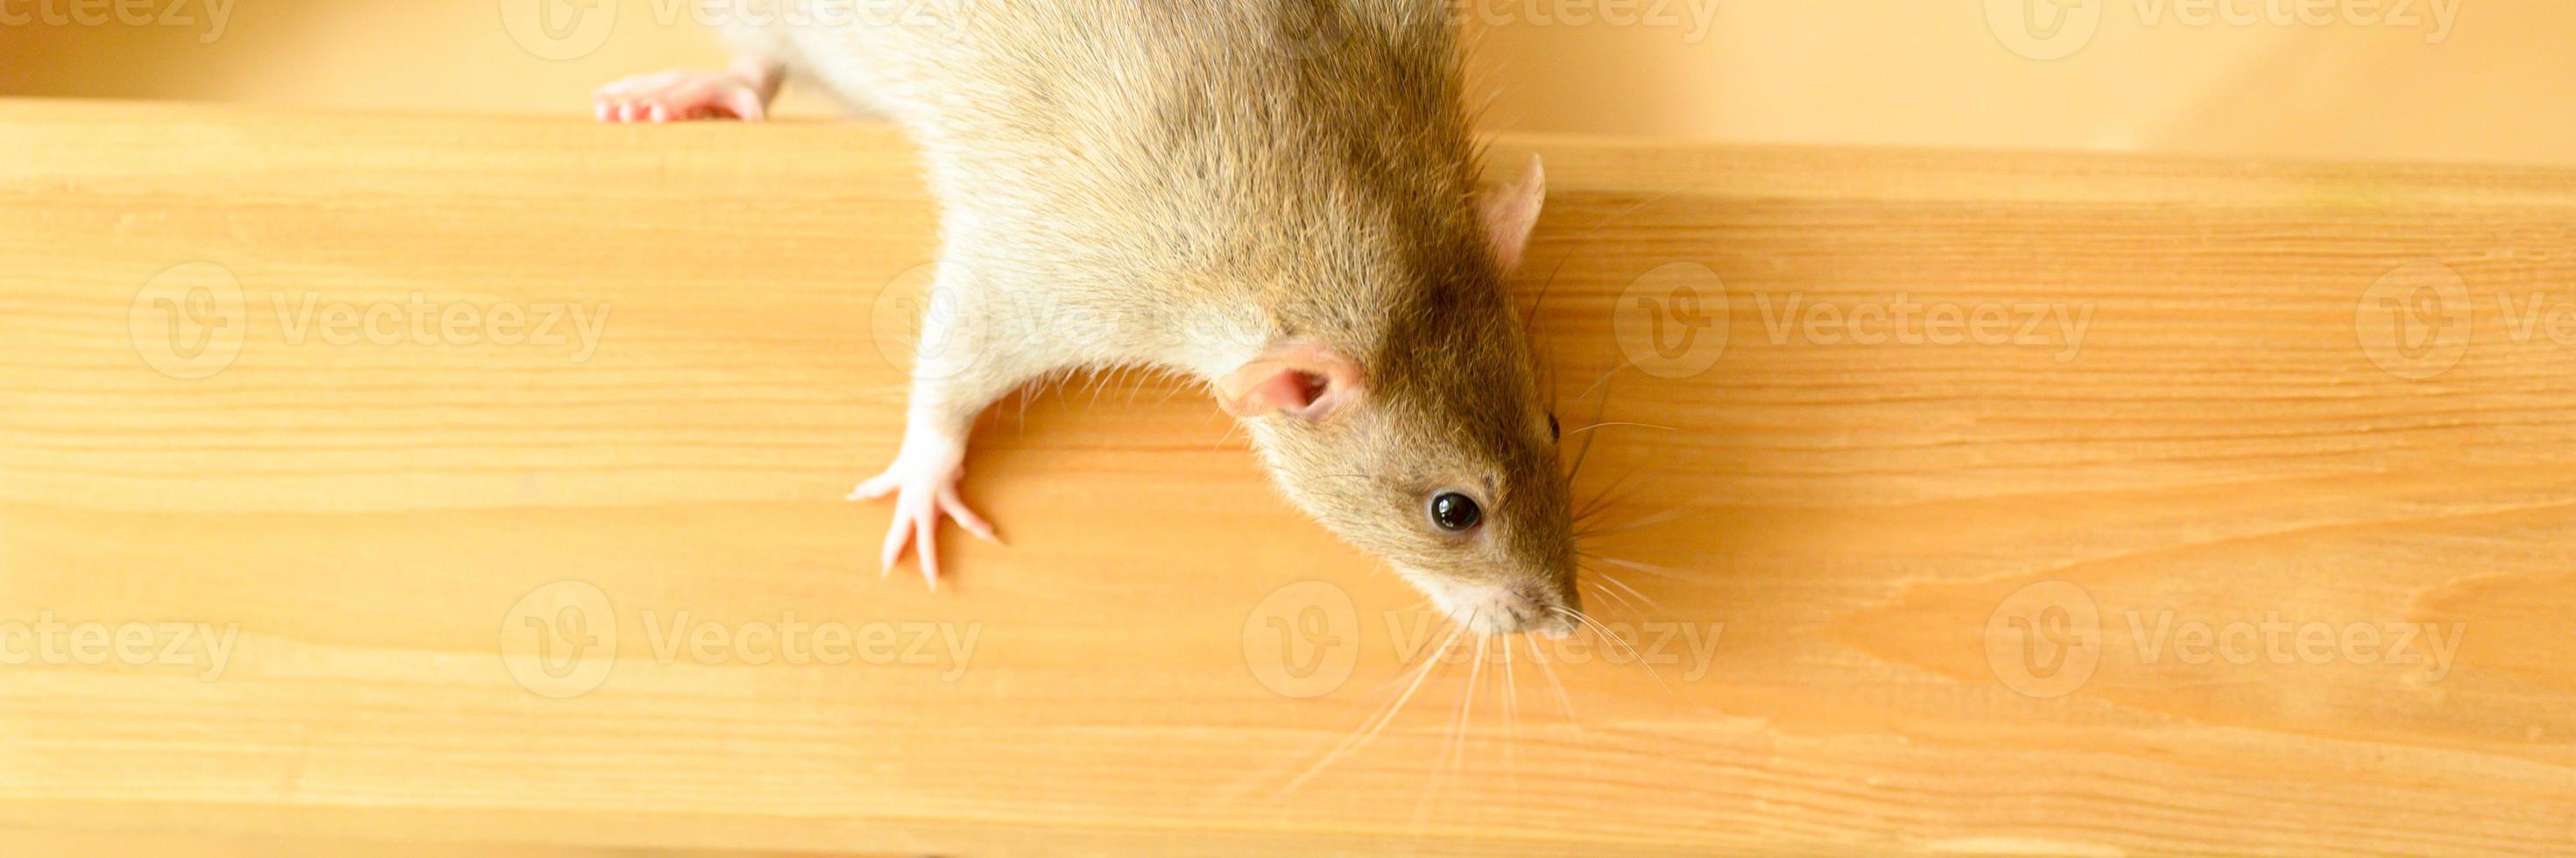 süßes Haustier flauschige Ratte mit braunem beigem Fell auf weißem Hintergrund foto